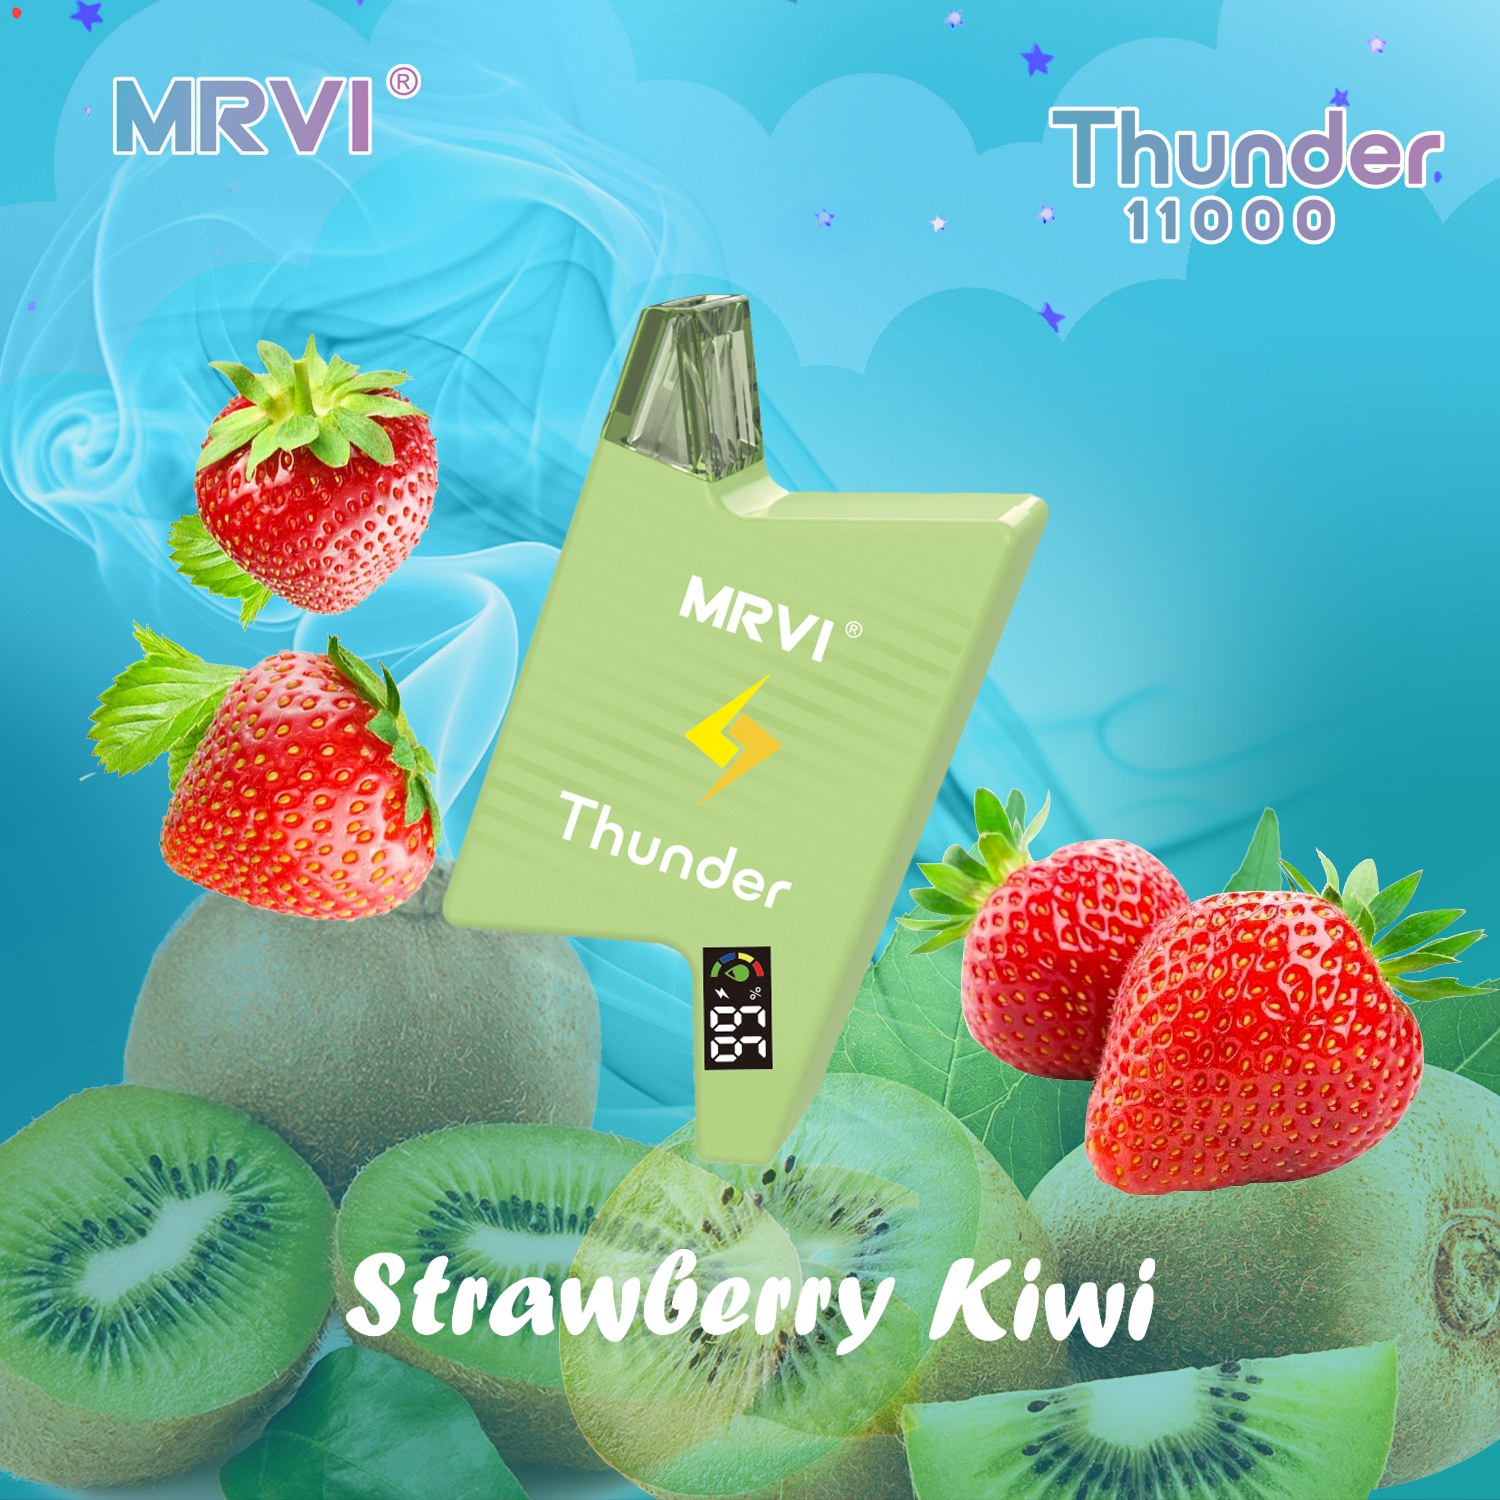 Оригинальный MRVI THUNDER 11000 затяжек, одноразовая коробка для электронных сигарет, перезаряжаемая батарея емкостью 600 мАч, в наличии, бесплатная доставка